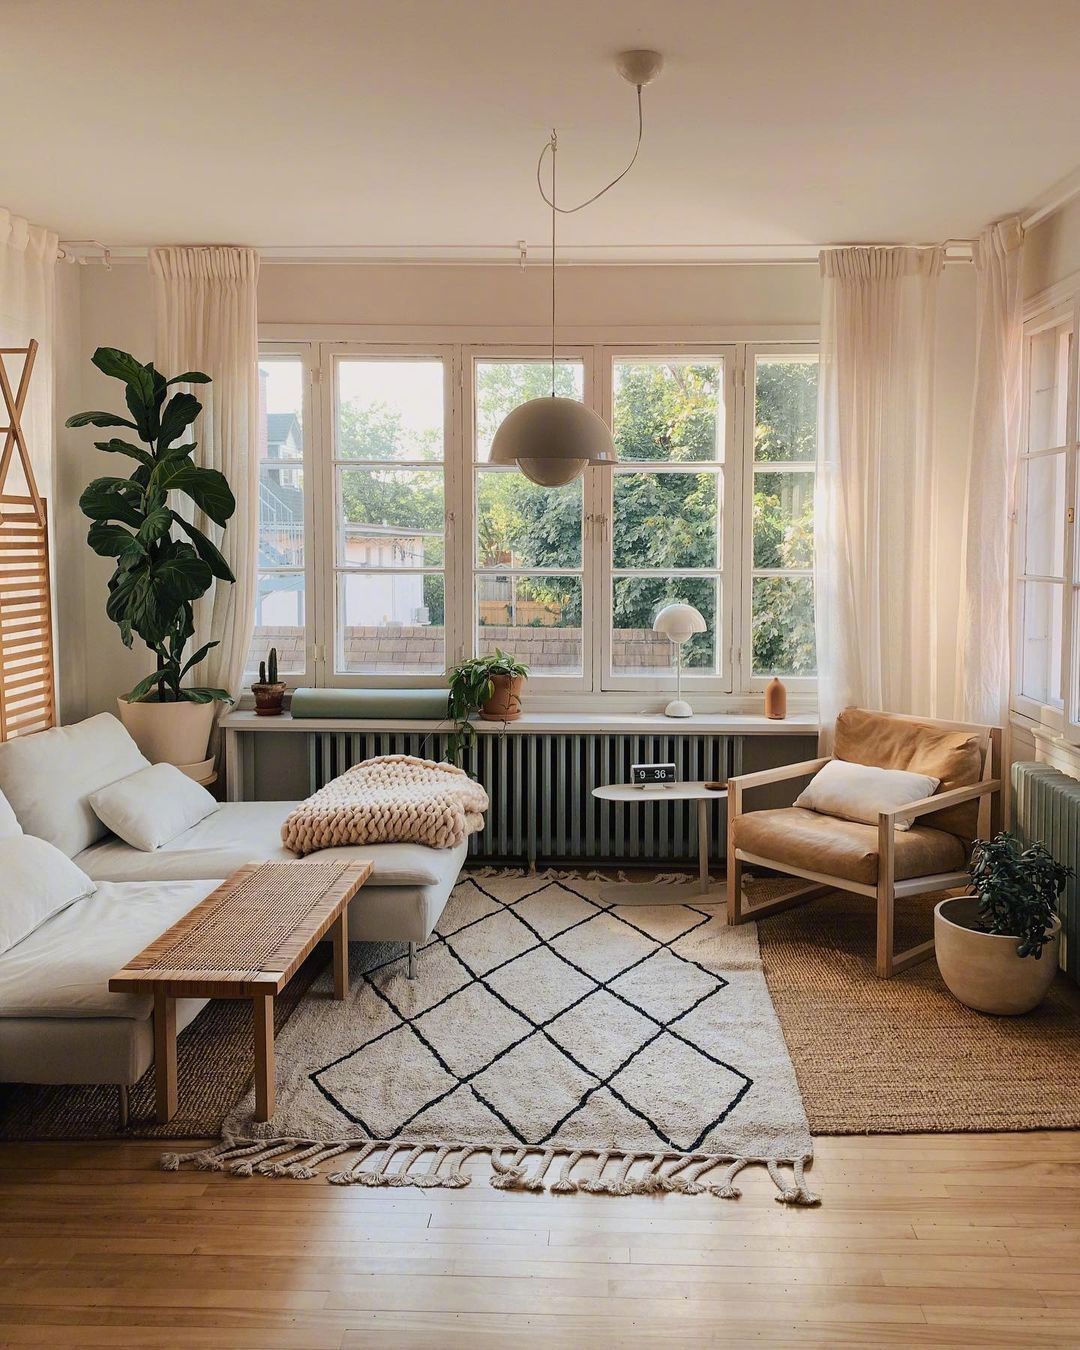 Phòng khách bố trí cạnh ô cửa sổ đầy nắng ấm với 2 chiếc ghế màu trắng êm ái, một chiếc sử dụng như sofa đơn, một chiếc có thể làm giường nghỉ trưa.